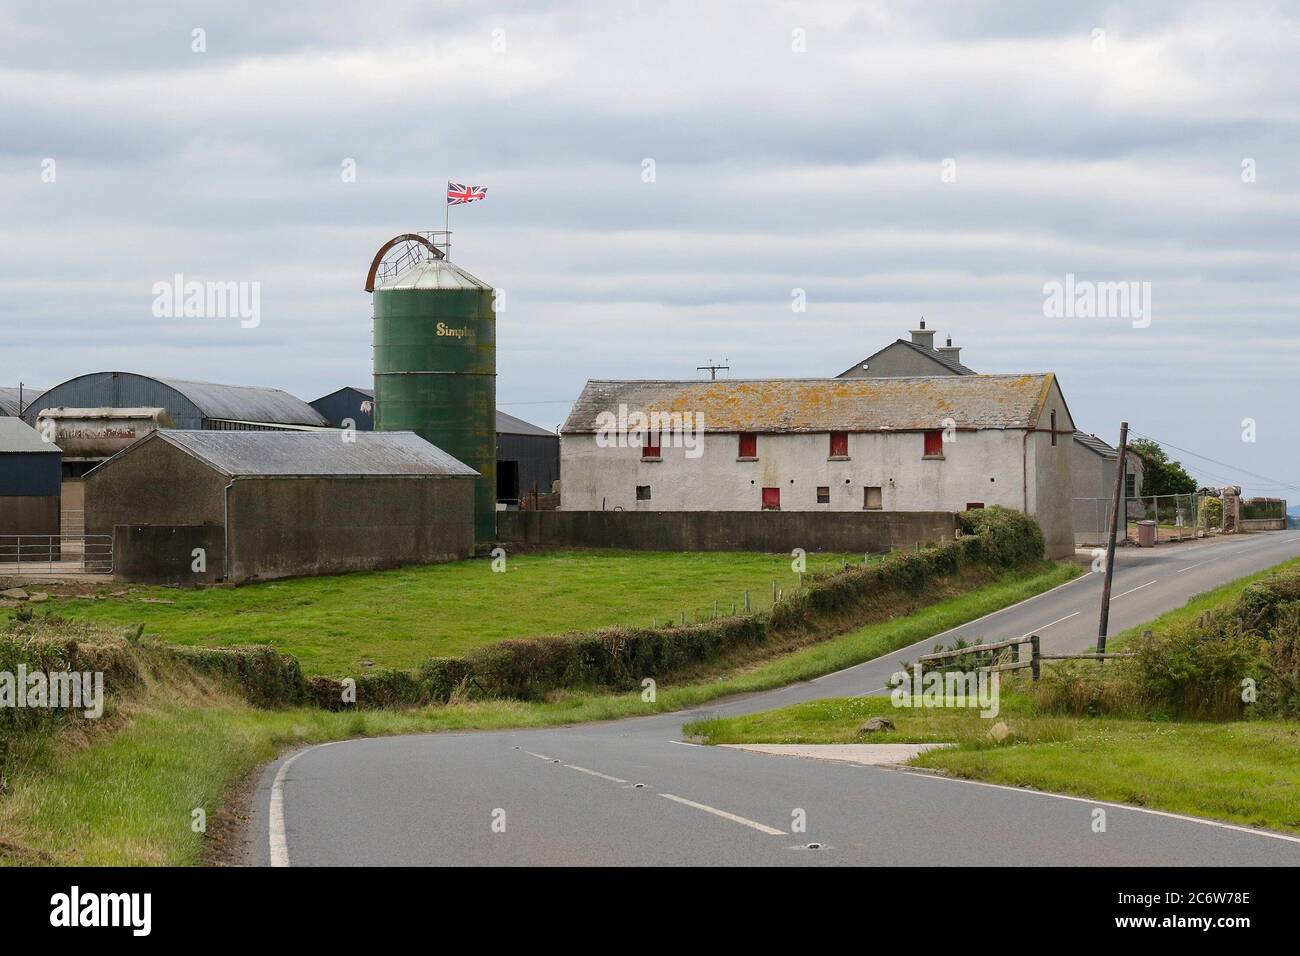 Condado de Down, Irlanda del Norte. 12 de julio de 2020. El tiempo en el Reino Unido: Un día gris con sol ocasional pero suave en una brisa fuerte. Crédito: CAZIMB/Alamy Live News. Foto de stock